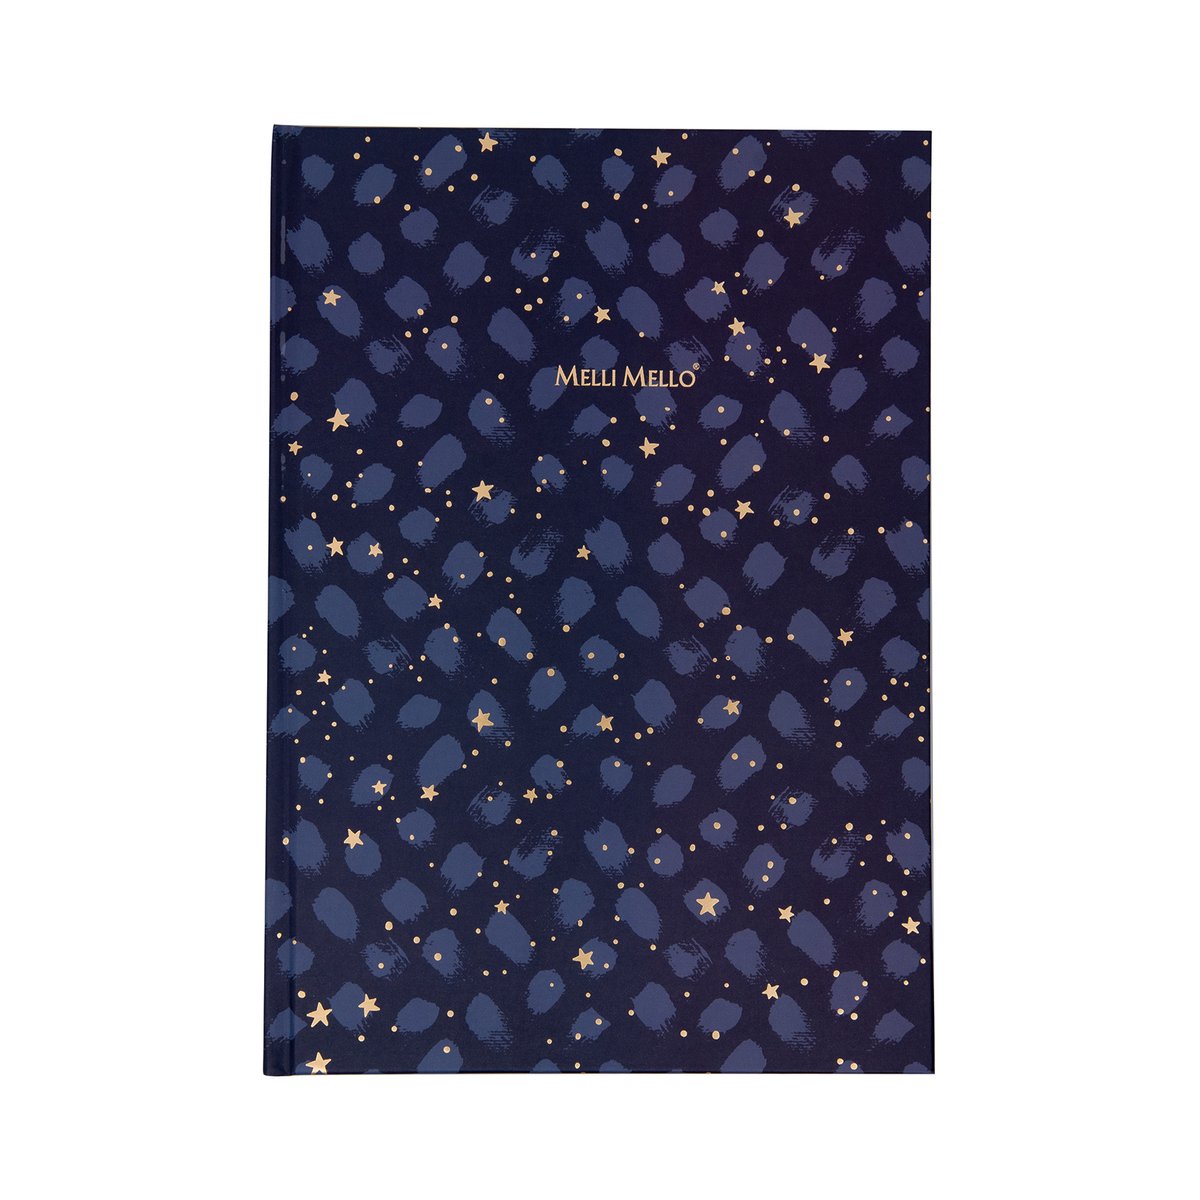 Melli Mello Journal Notebook - Notitieboek A4 Hardcover - Gebonden Notitieblok met Lijnbedrukking - Shine Bright - 21x30x2 cm